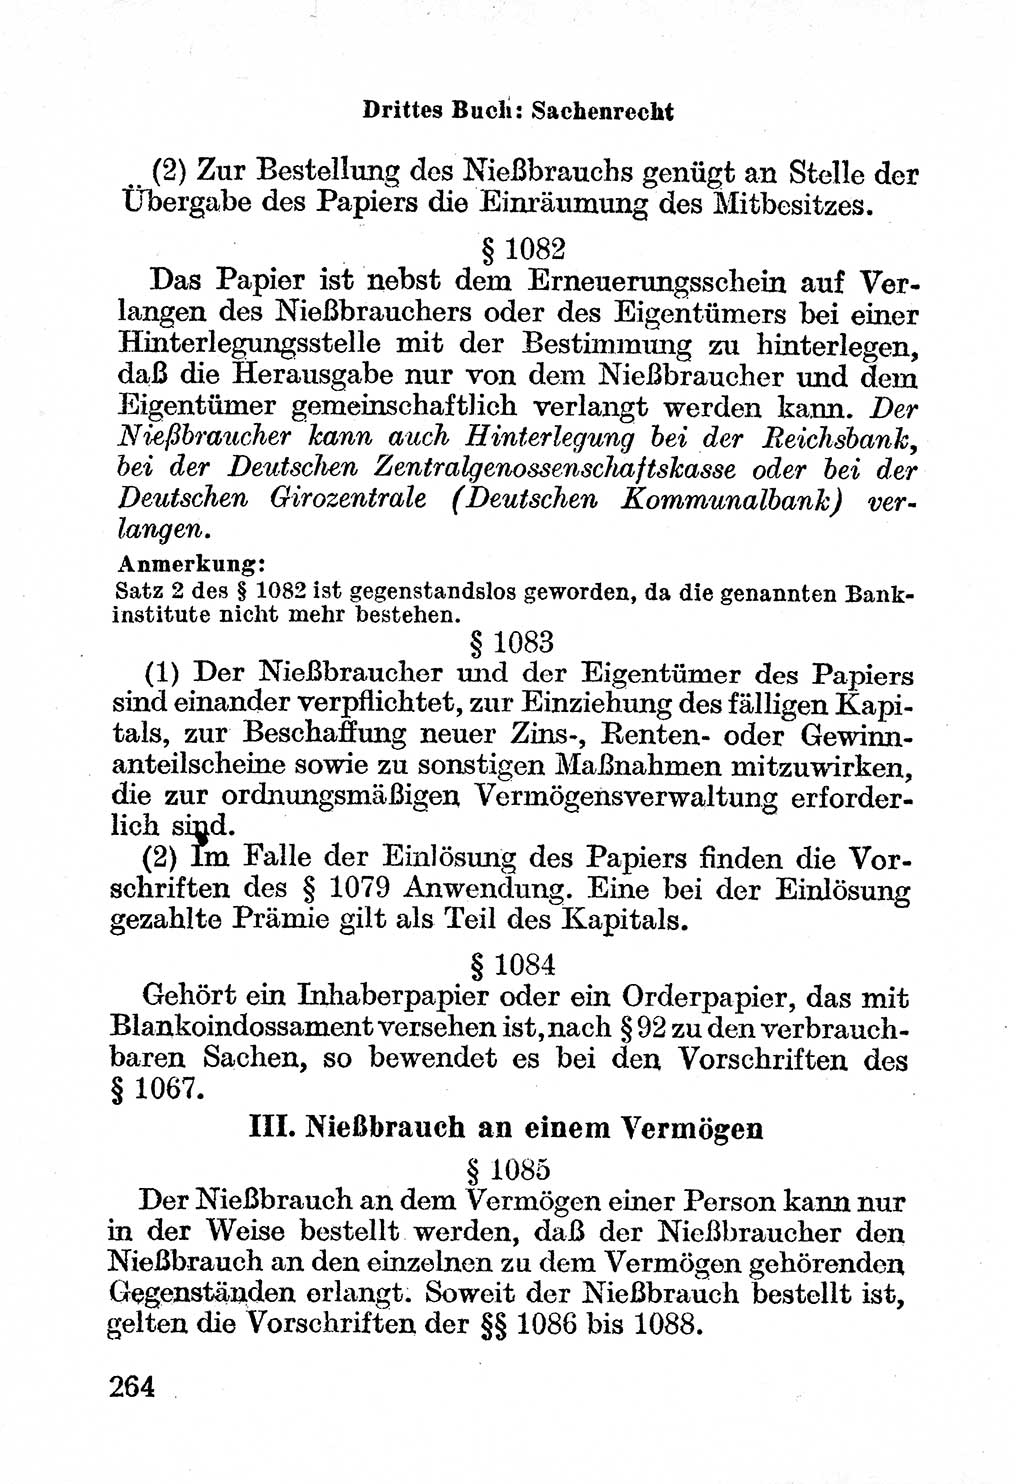 Bürgerliches Gesetzbuch (BGB) nebst wichtigen Nebengesetzen [Deutsche Demokratische Republik (DDR)] 1956, Seite 264 (BGB Nebenges. DDR 1956, S. 264)